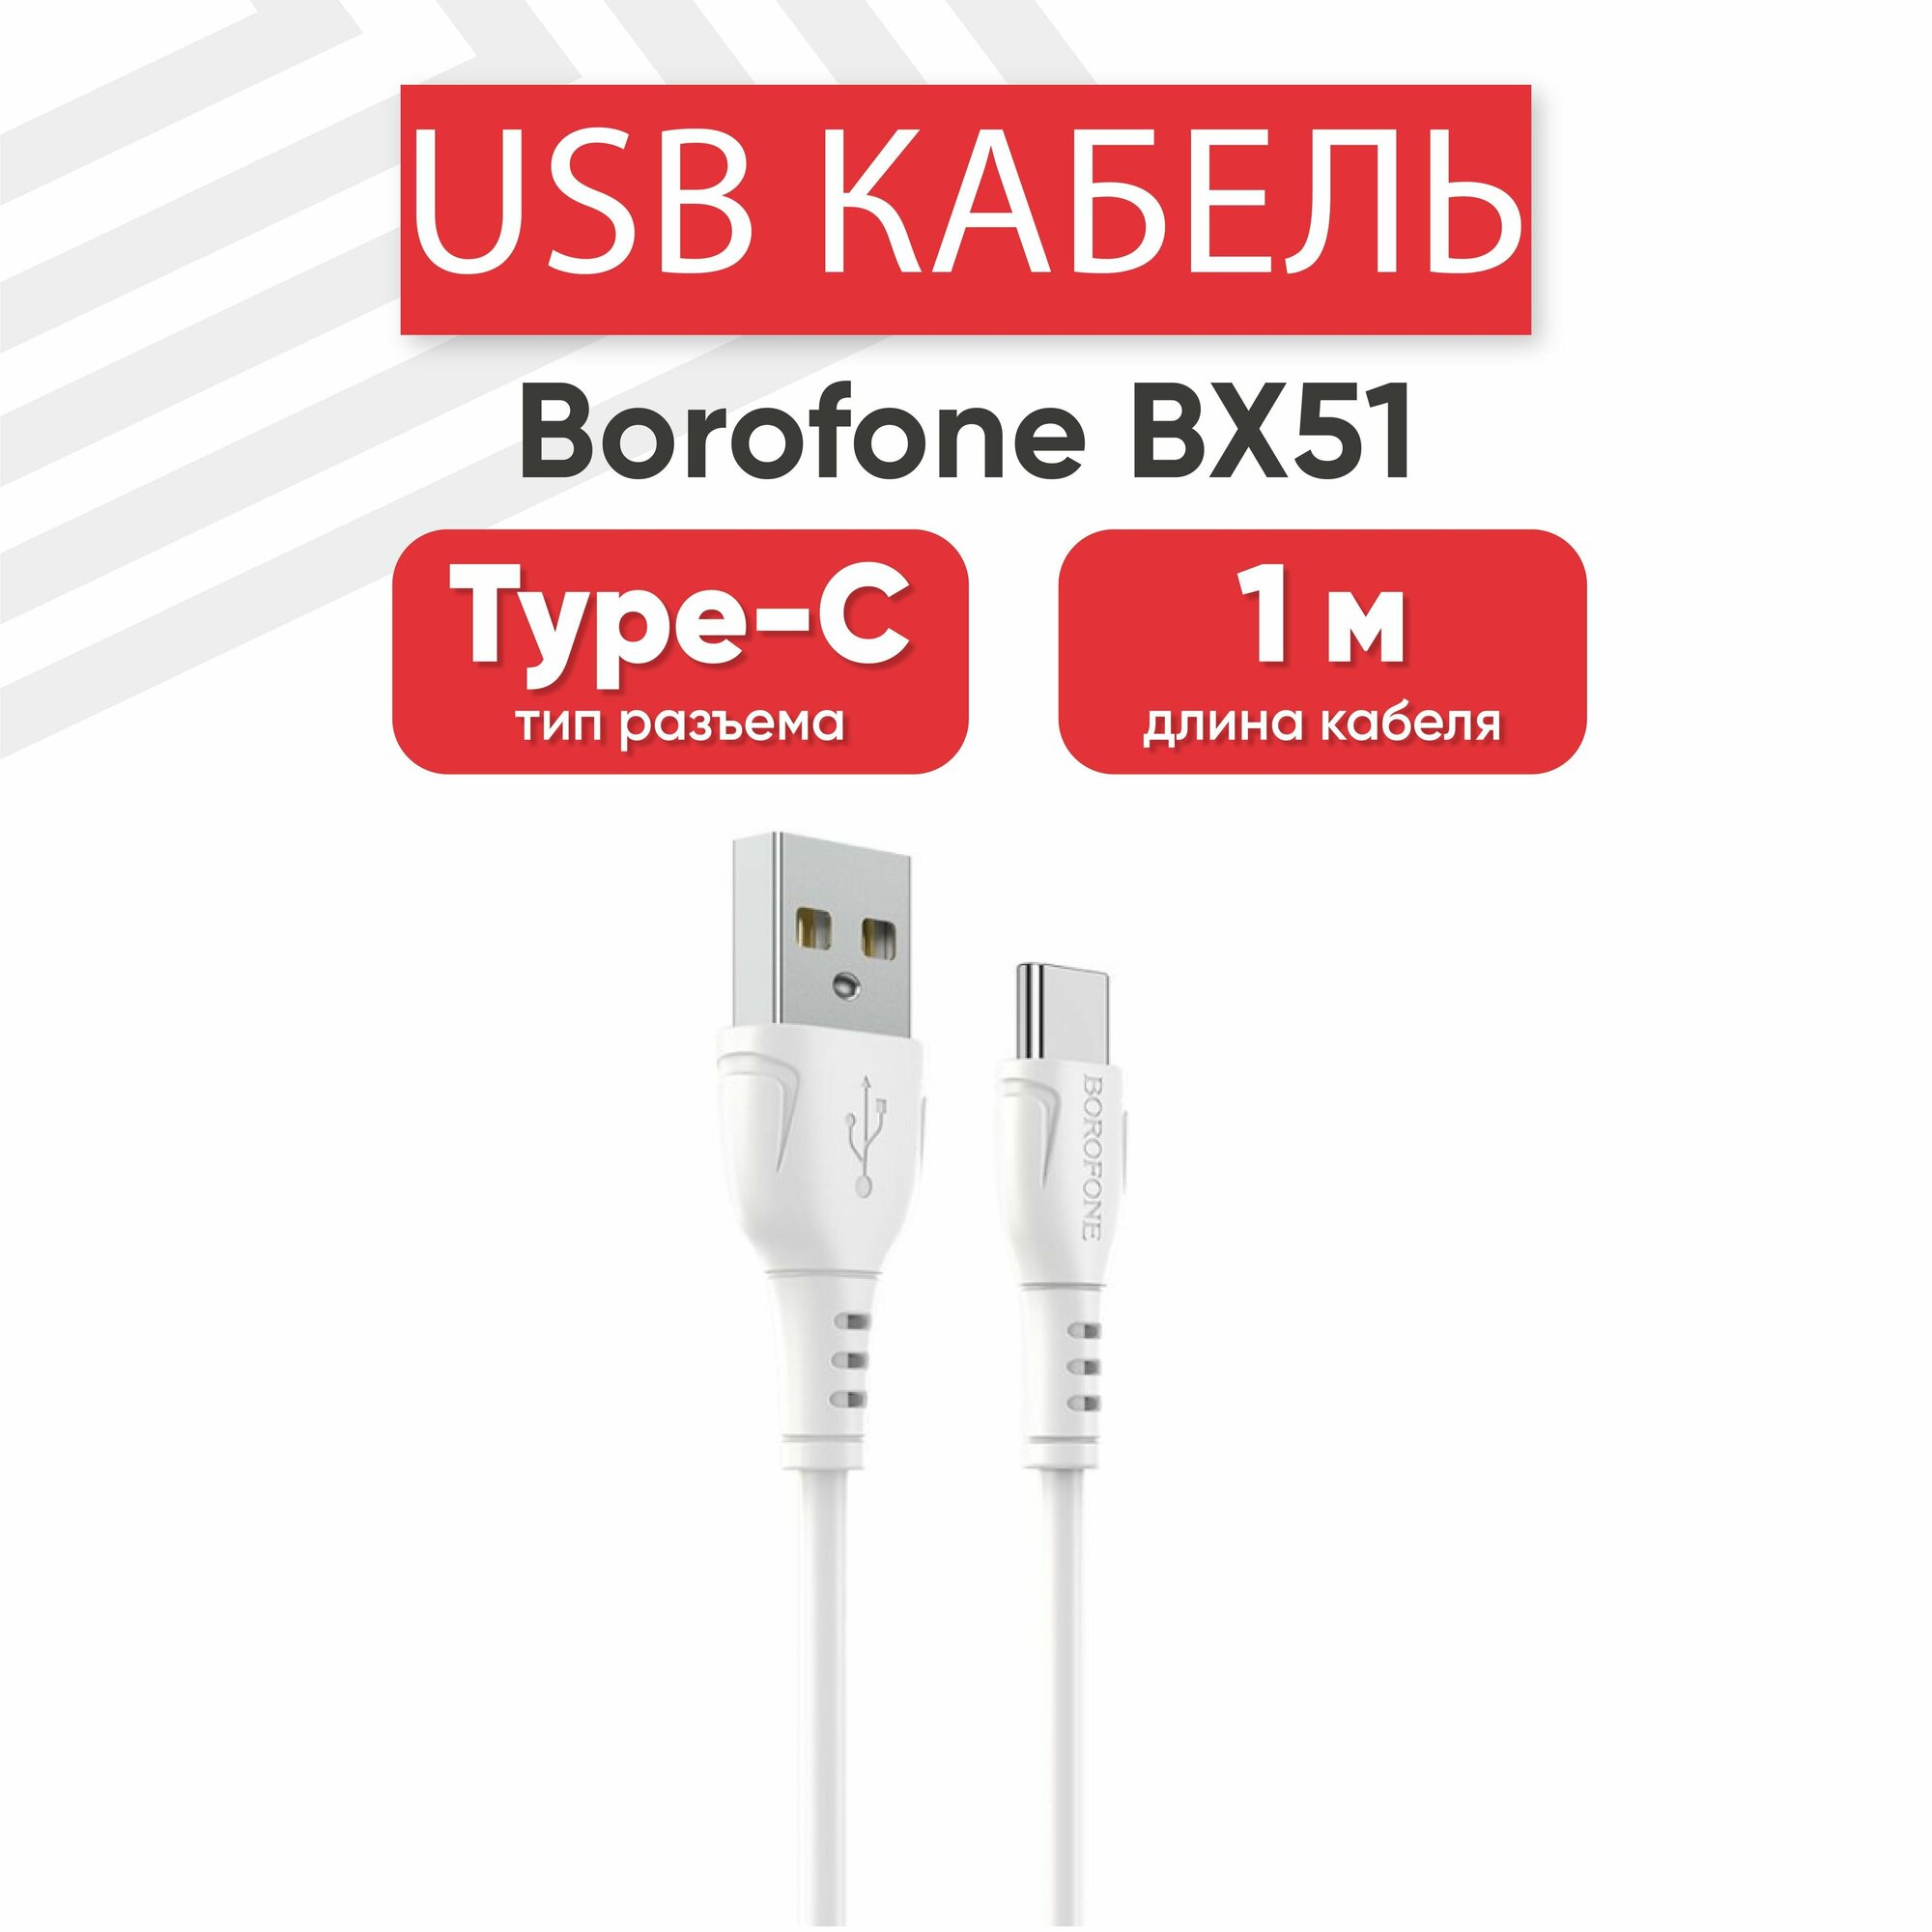 USB кабель Borofone BX51 для зарядки, передачи данных, Type-C, 3А, Fast Charging, 1 метр, PVC, белый